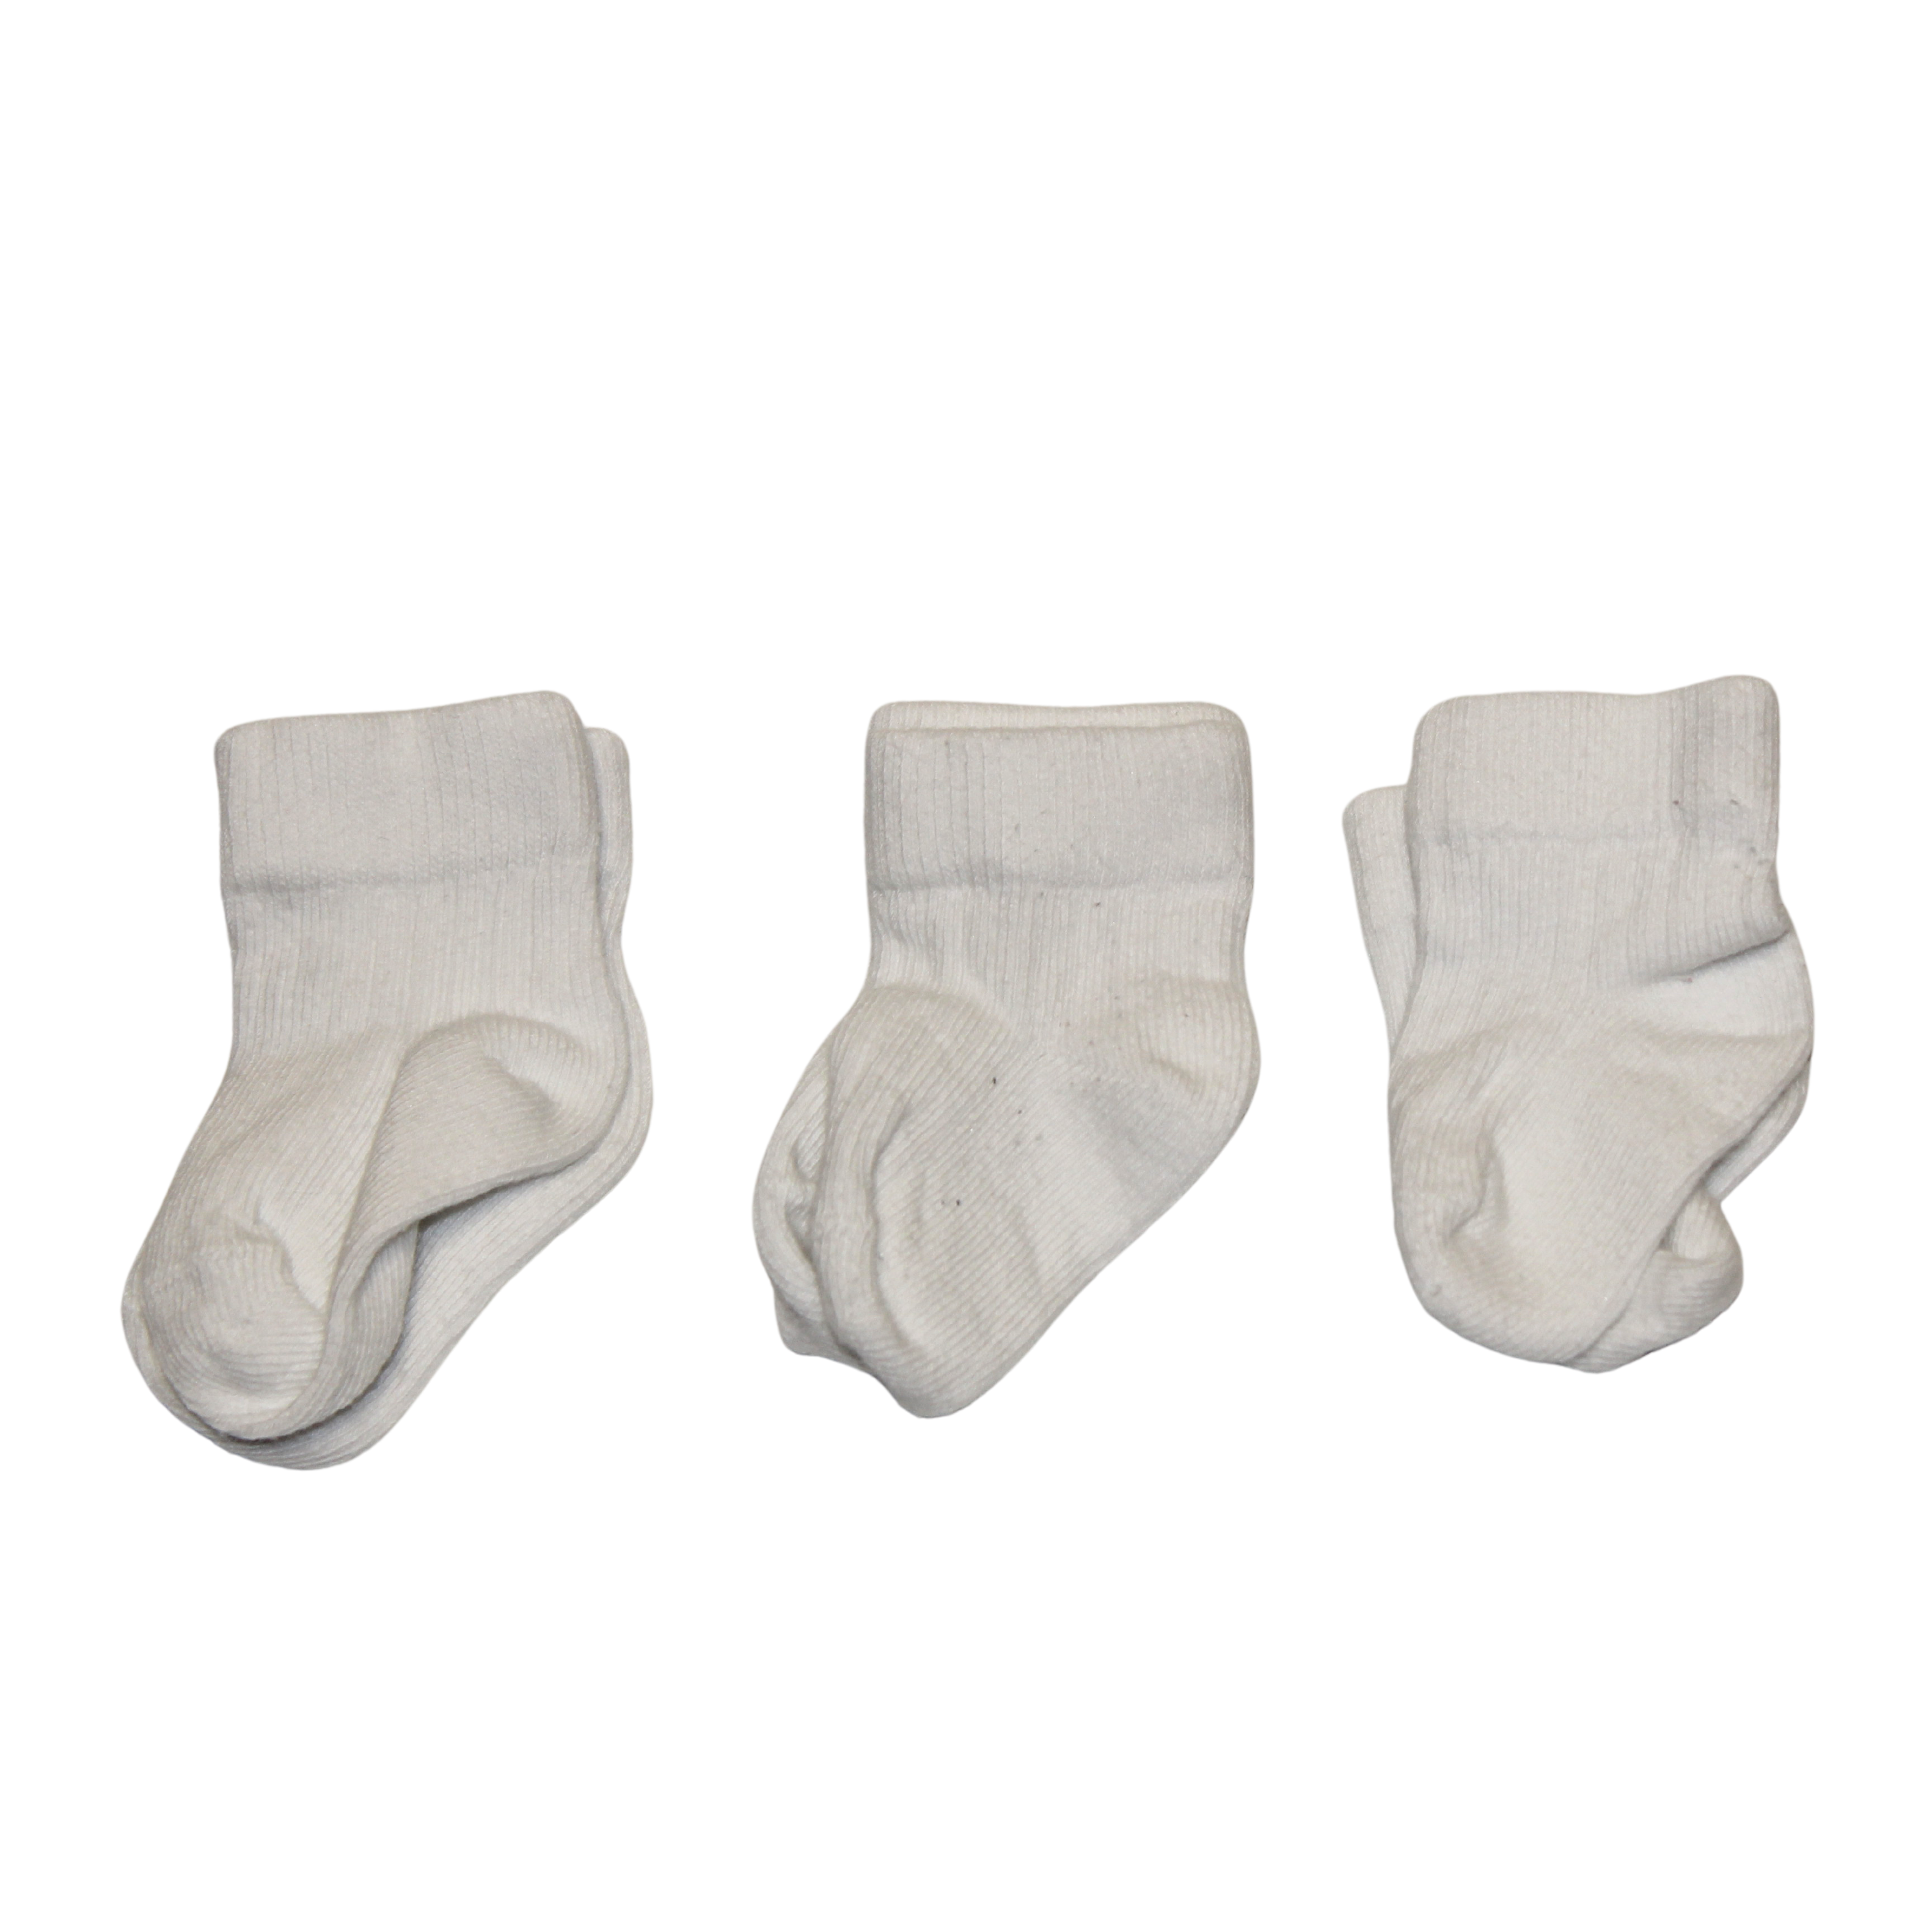 3x White Ribbed Socks